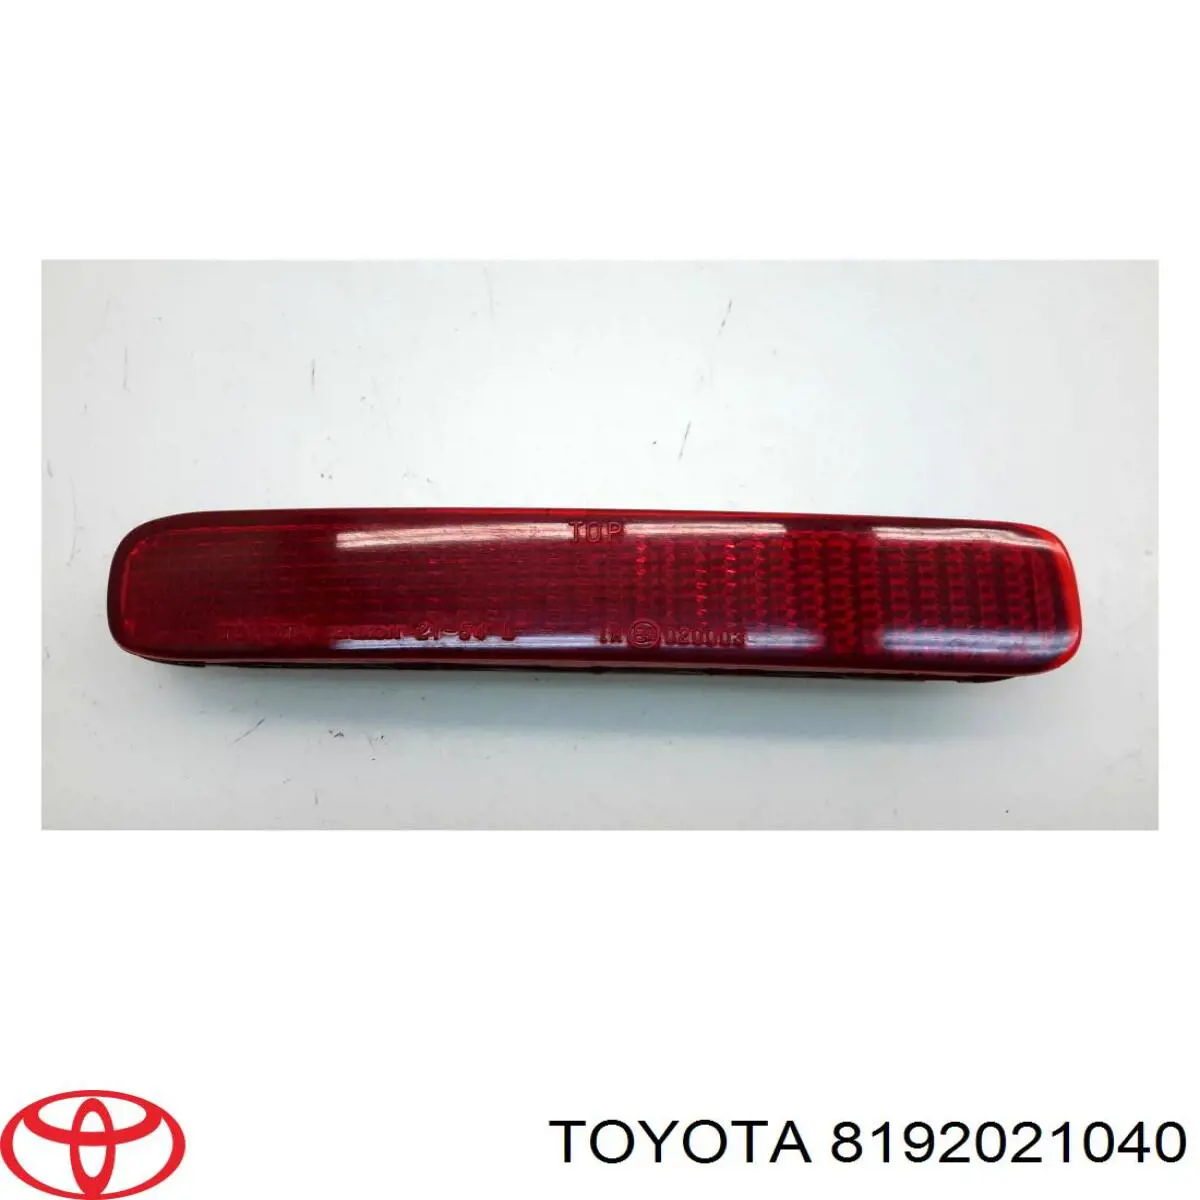 Retrorrefletor (refletor) do pára-choque traseiro esquerdo para Toyota Corolla (R10)